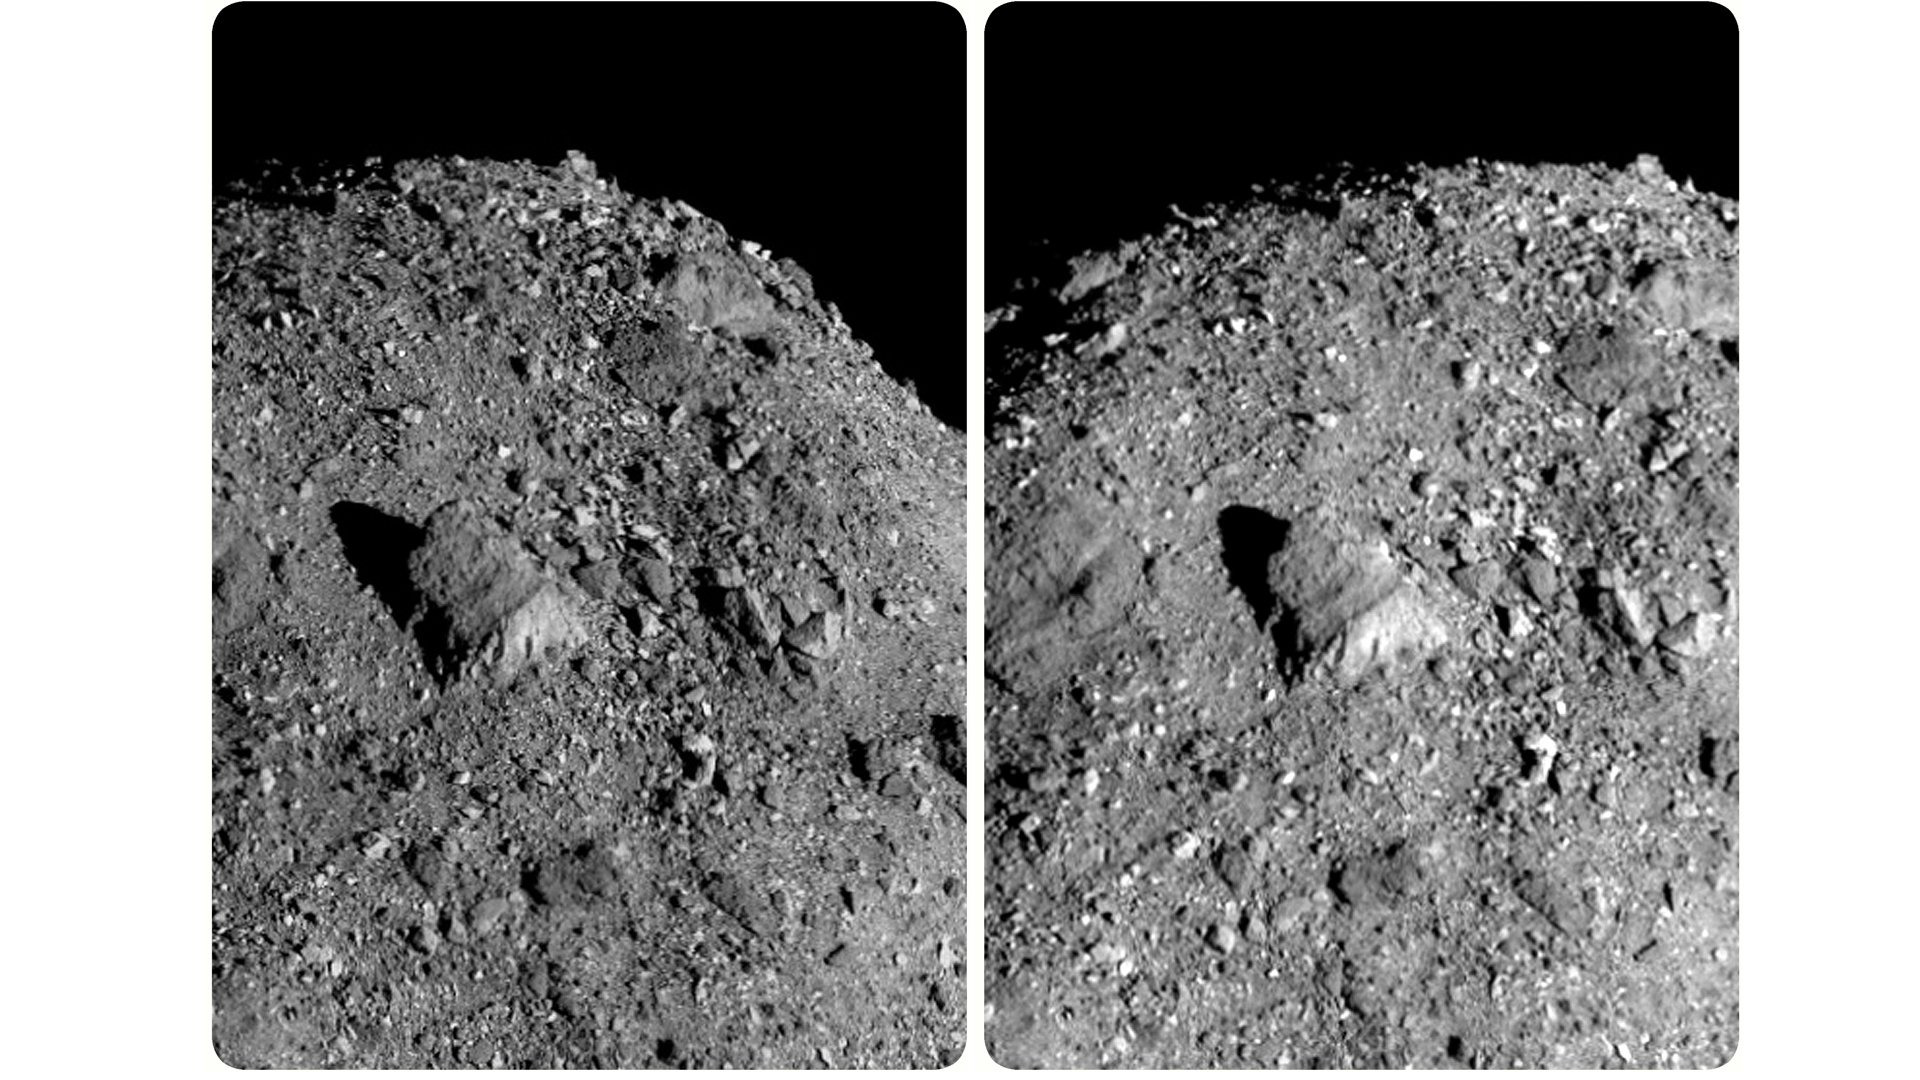 O imagine stereoscopică a unui afloriment stâncos de pe suprafața asteroidului Bennu.